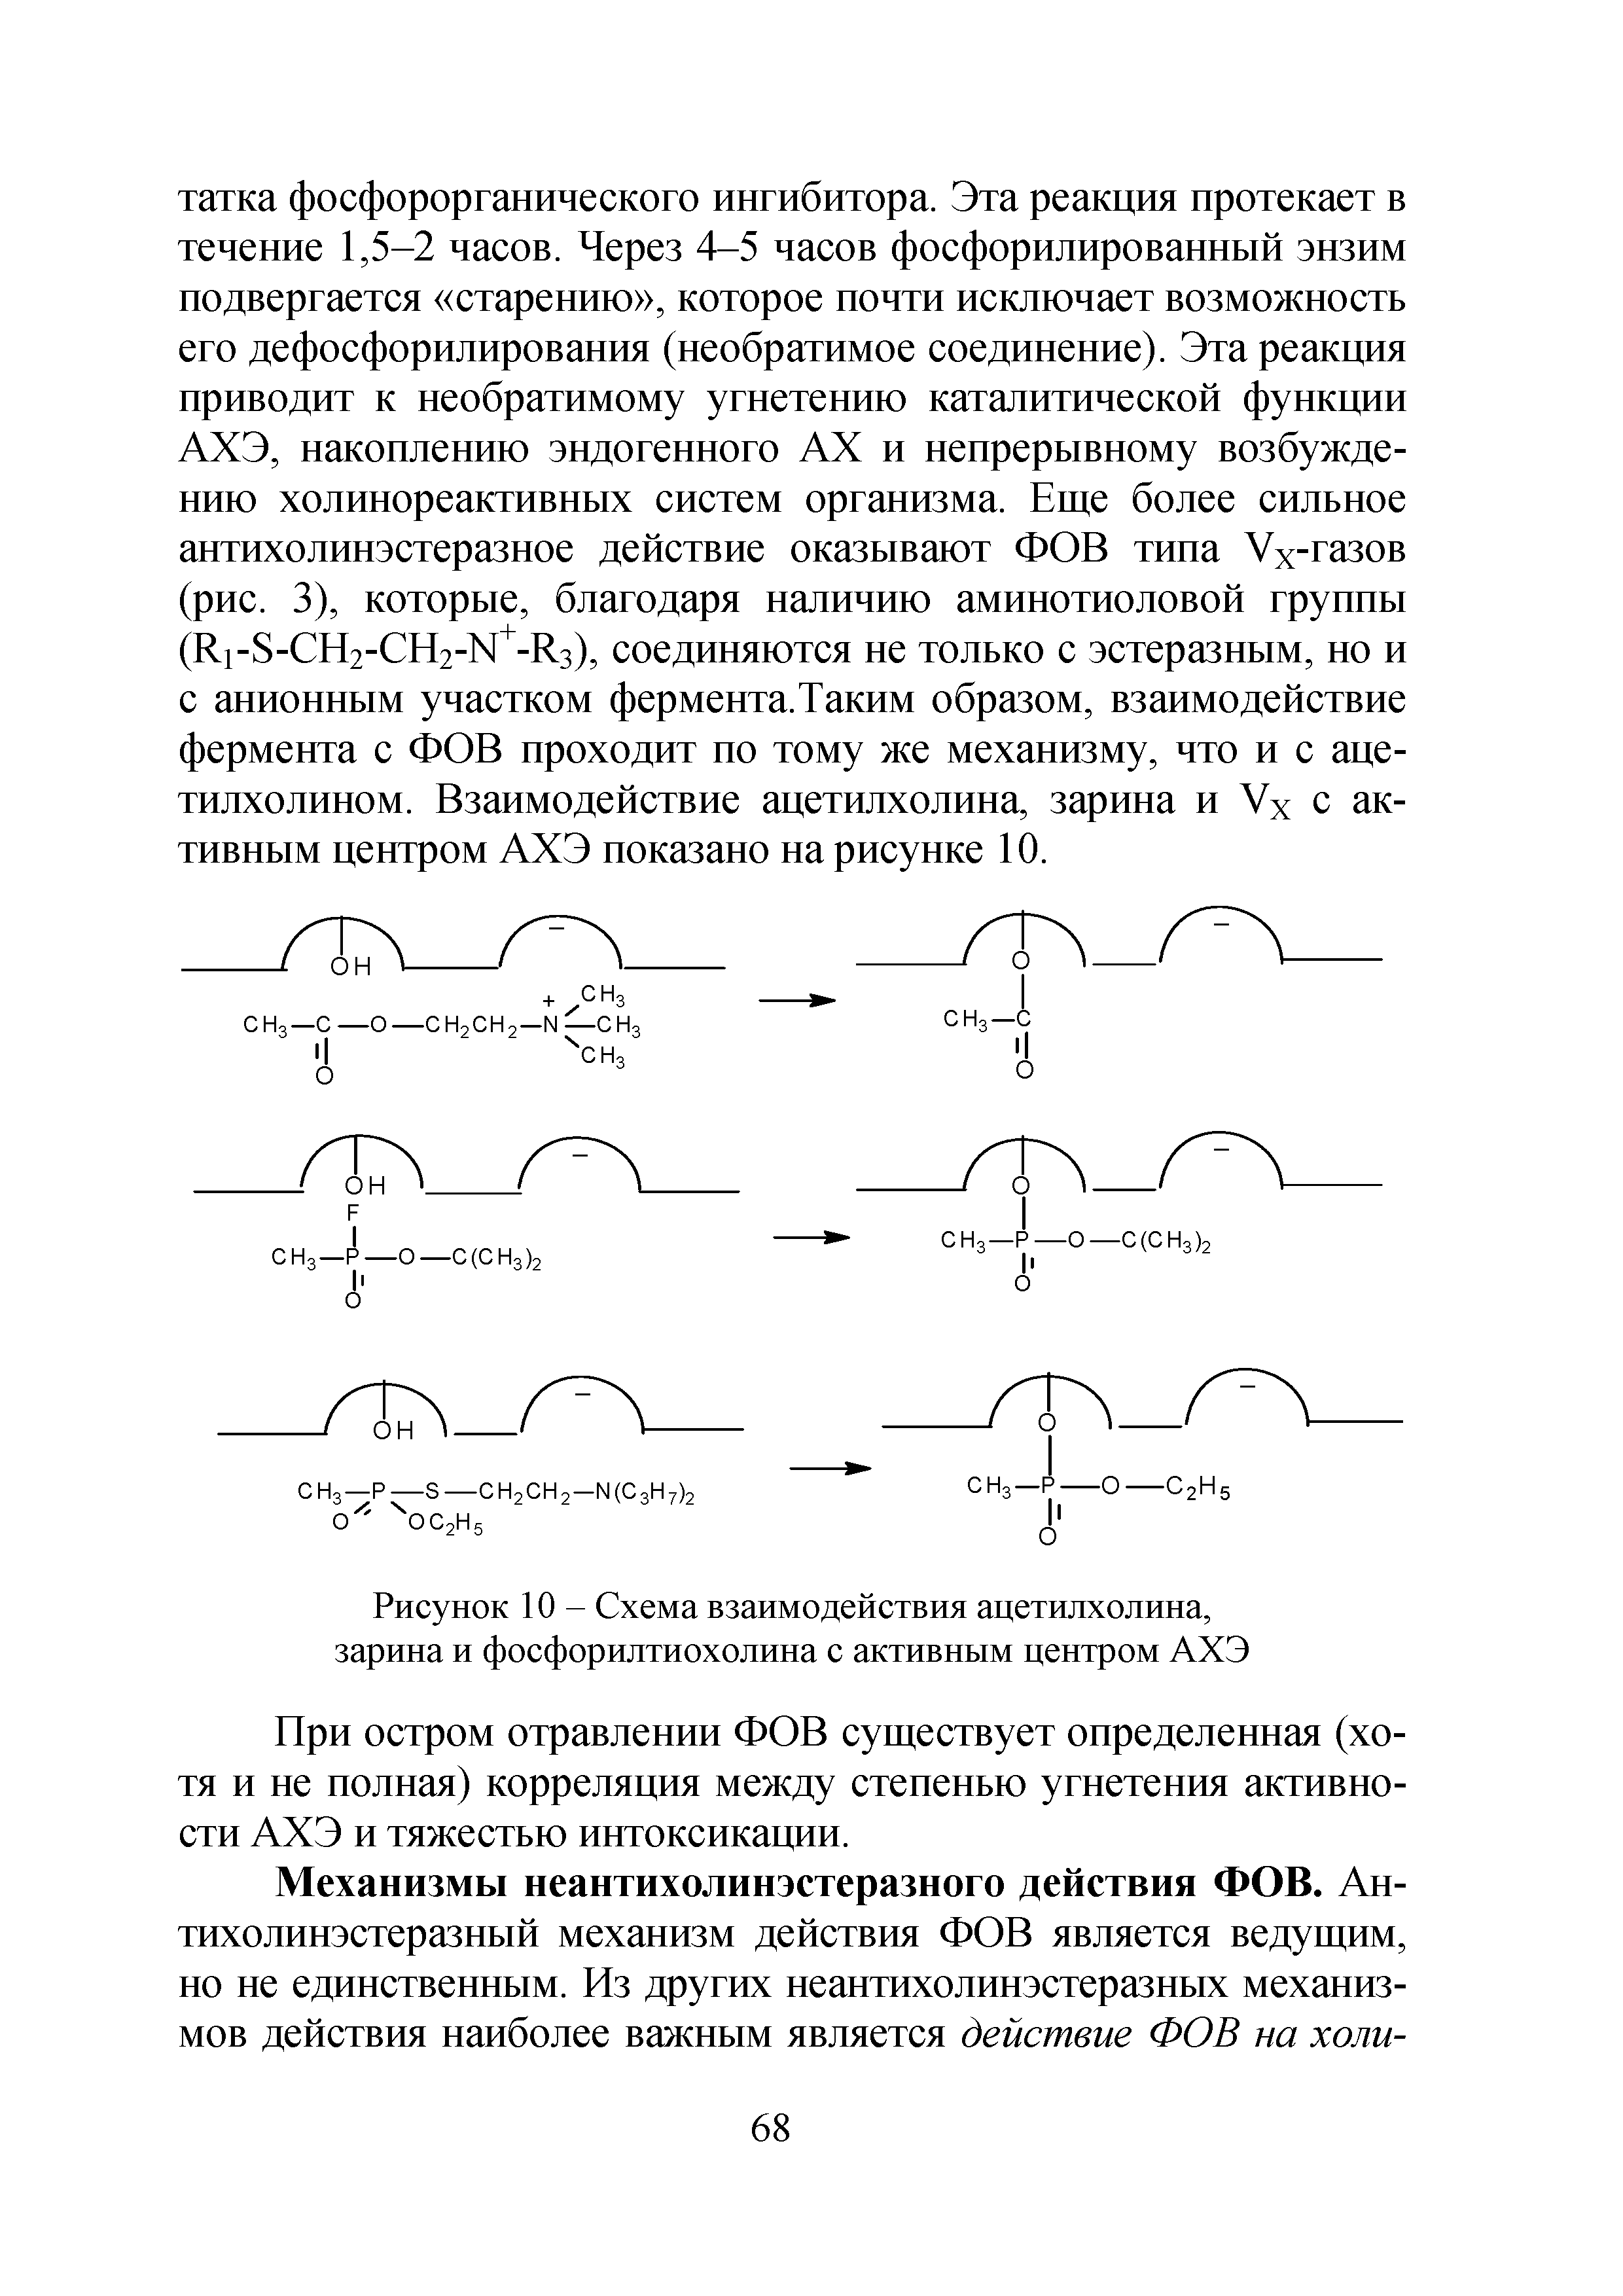 Рисунок 10 - Схема взаимодействия ацетилхолина, зарина и фосфорилтиохолина с активным центром АХЭ...